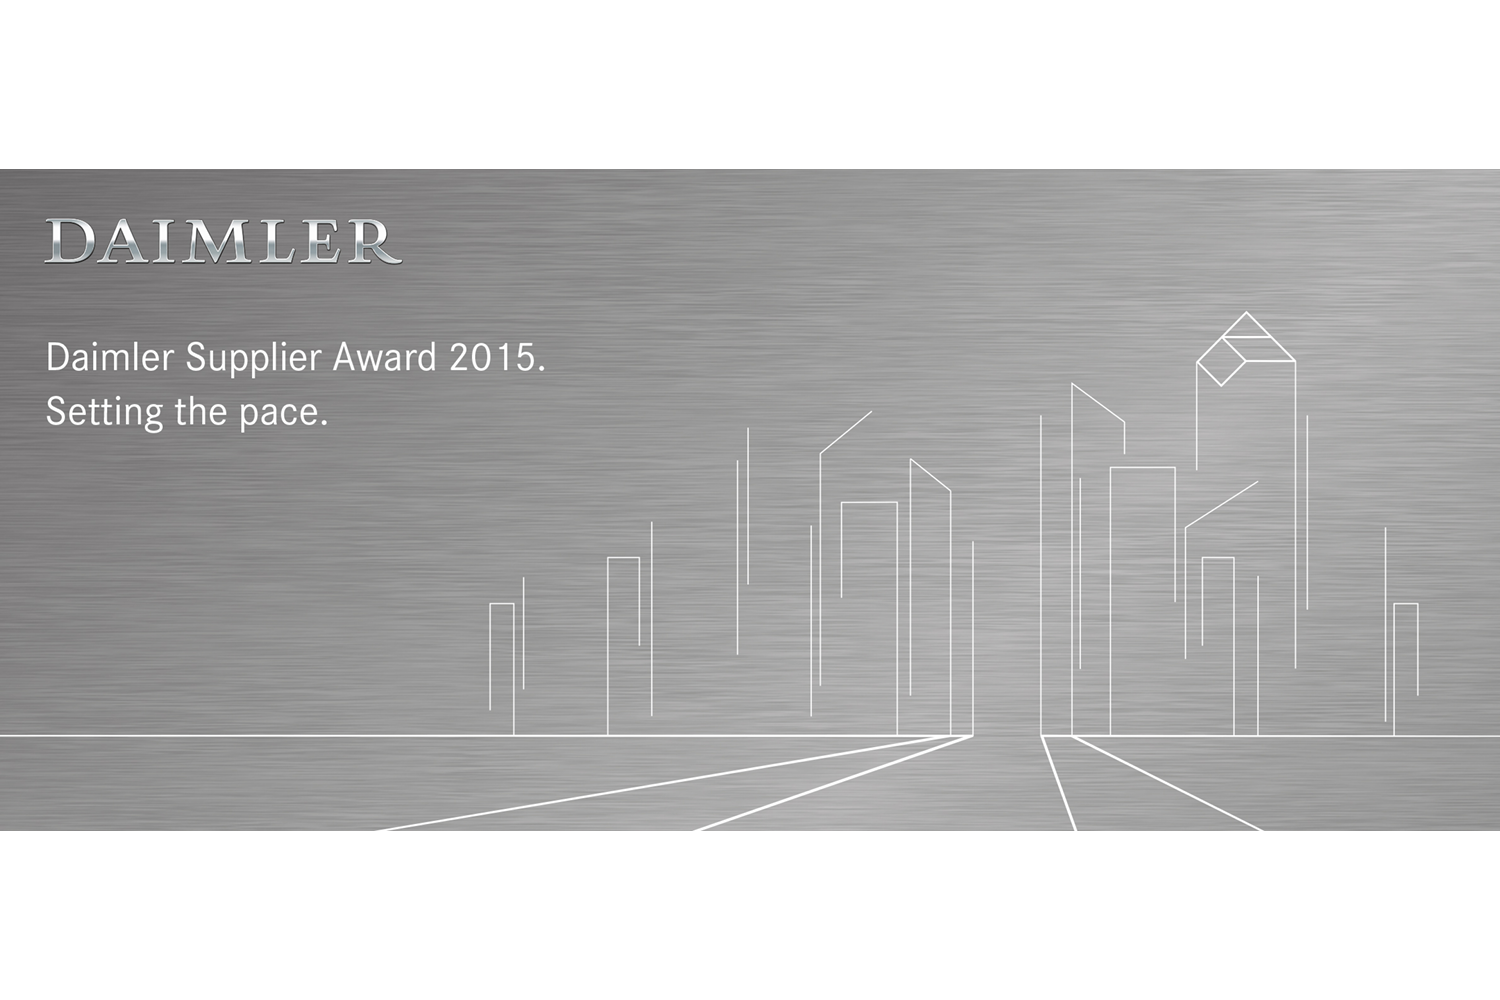 Daimler Supplier Award 2015